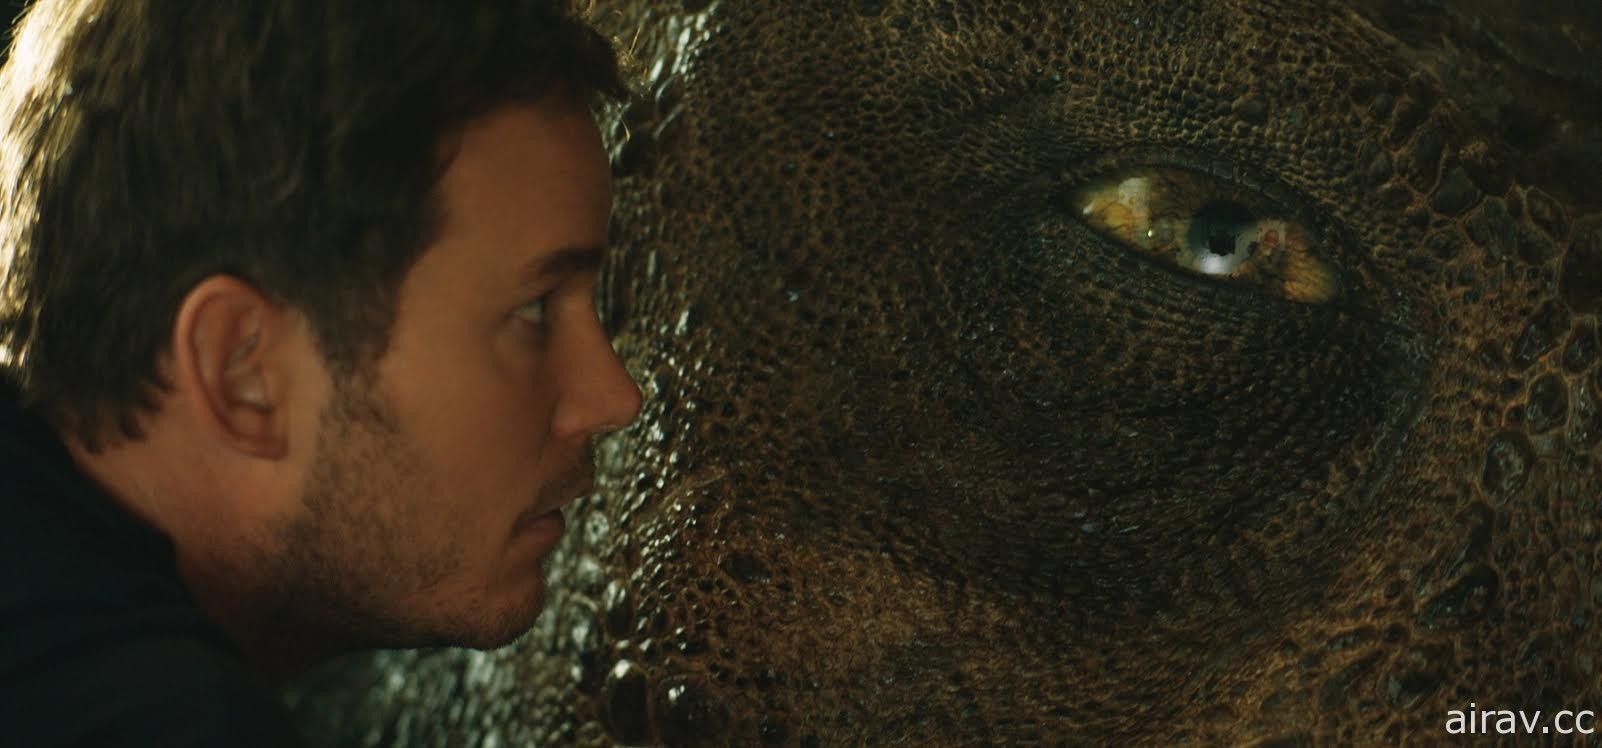 《侏罗纪世界：殒落国度》全台首周票房破新台币 2 亿 5 千 4 百万元